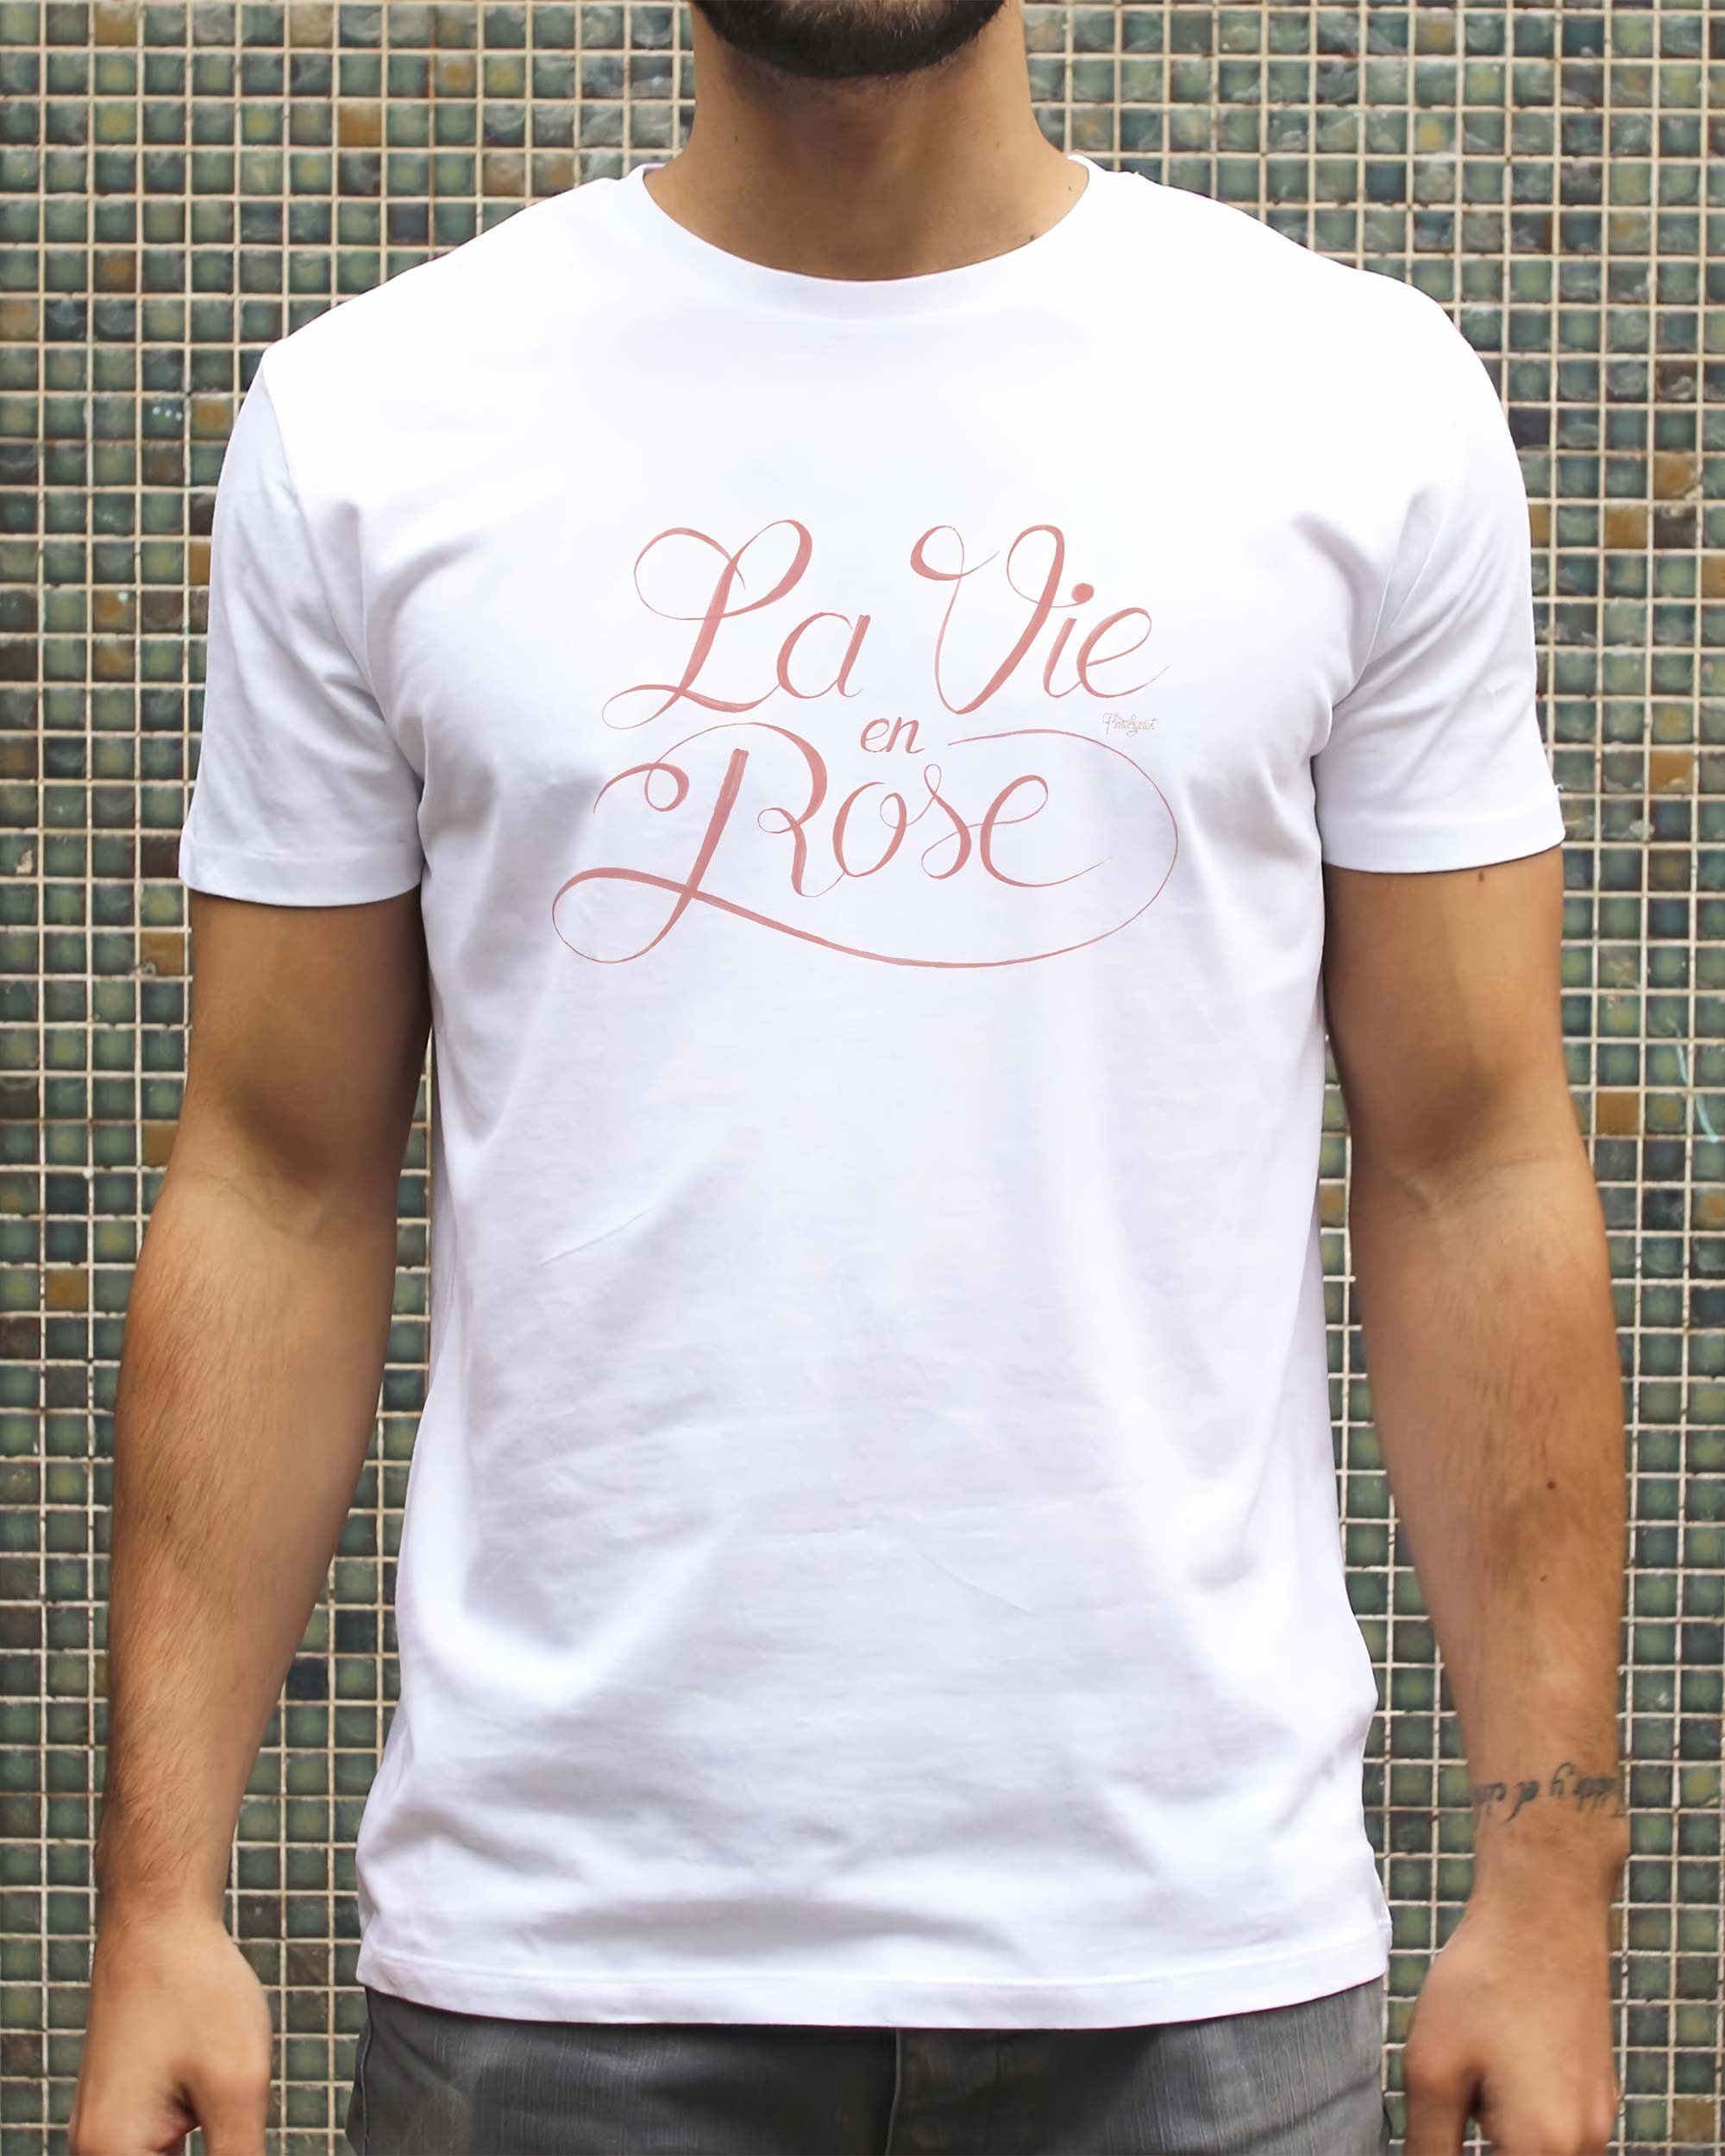 T-shirt La Vie en Rose de couleur Blanc par Flowhynot